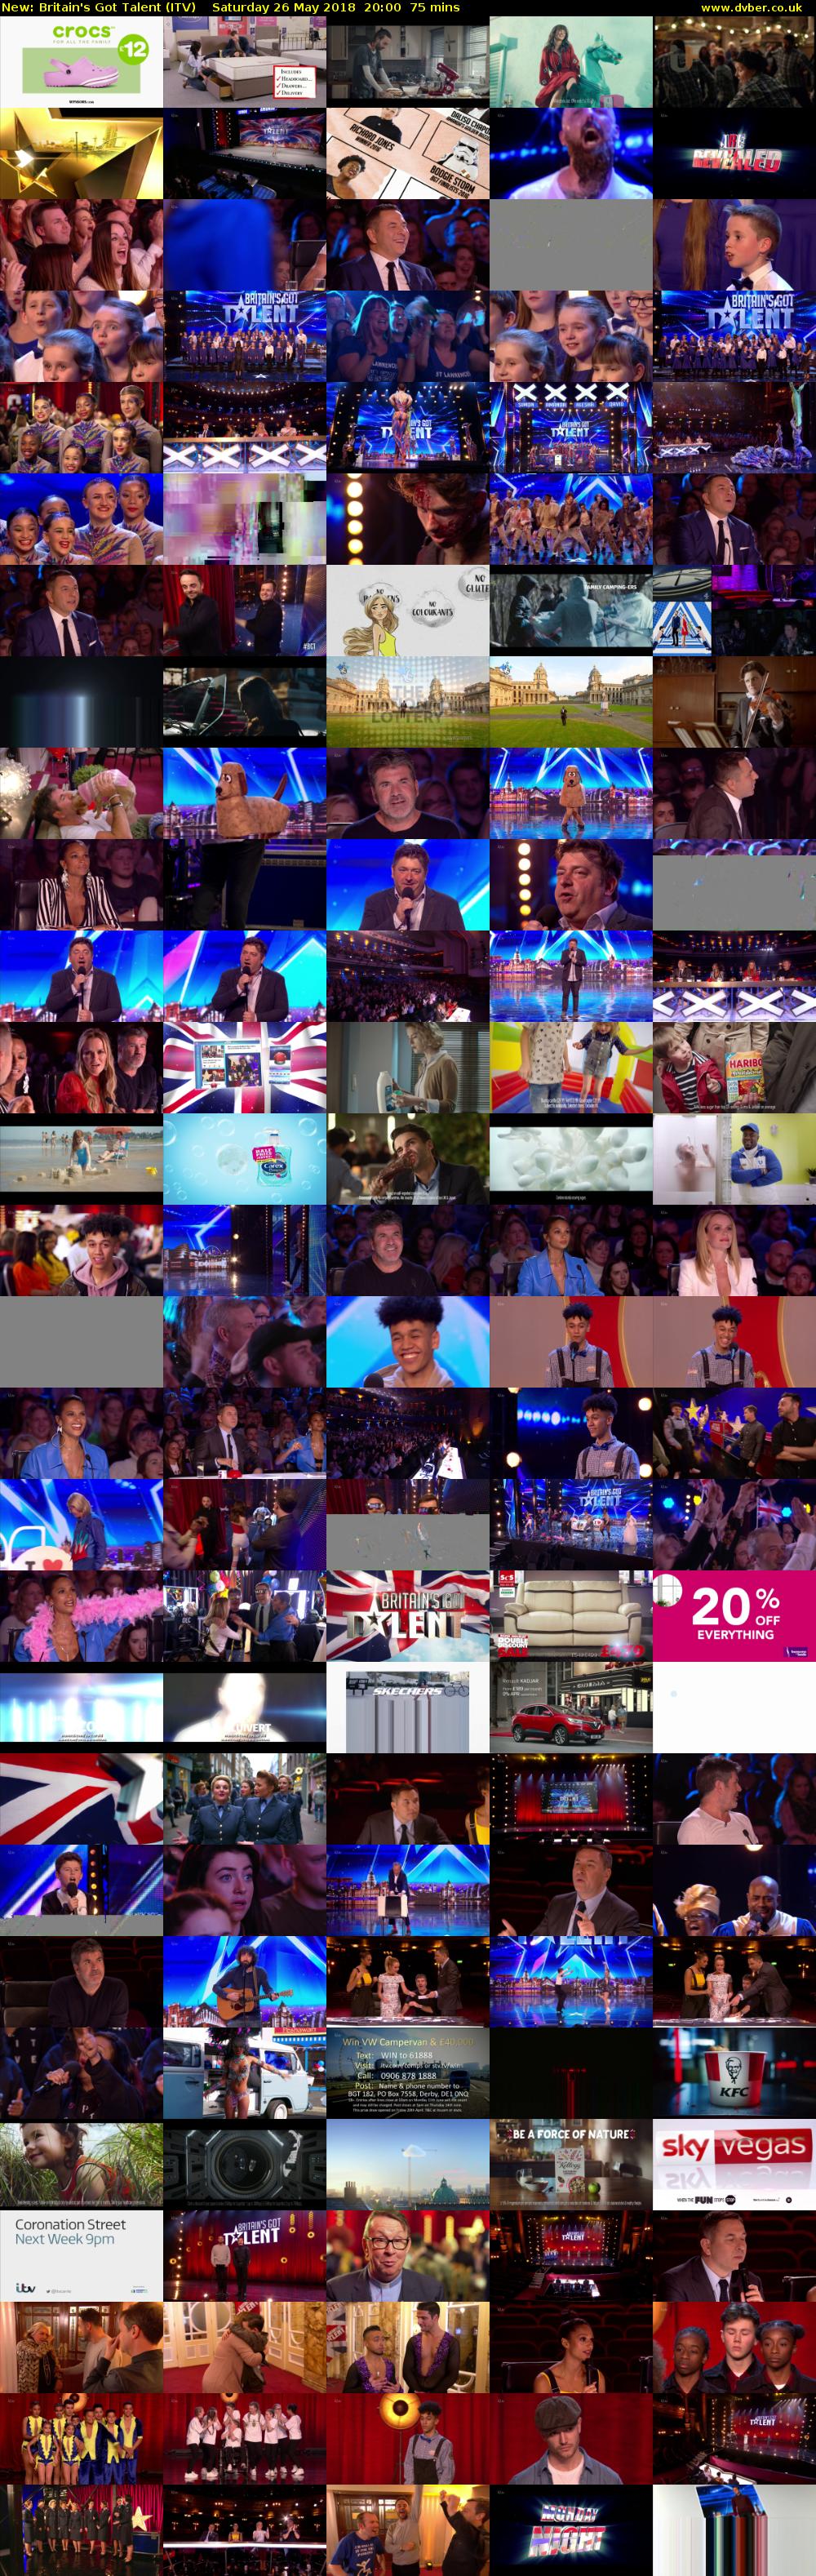 Britain's Got Talent (ITV) Saturday 26 May 2018 20:00 - 21:15